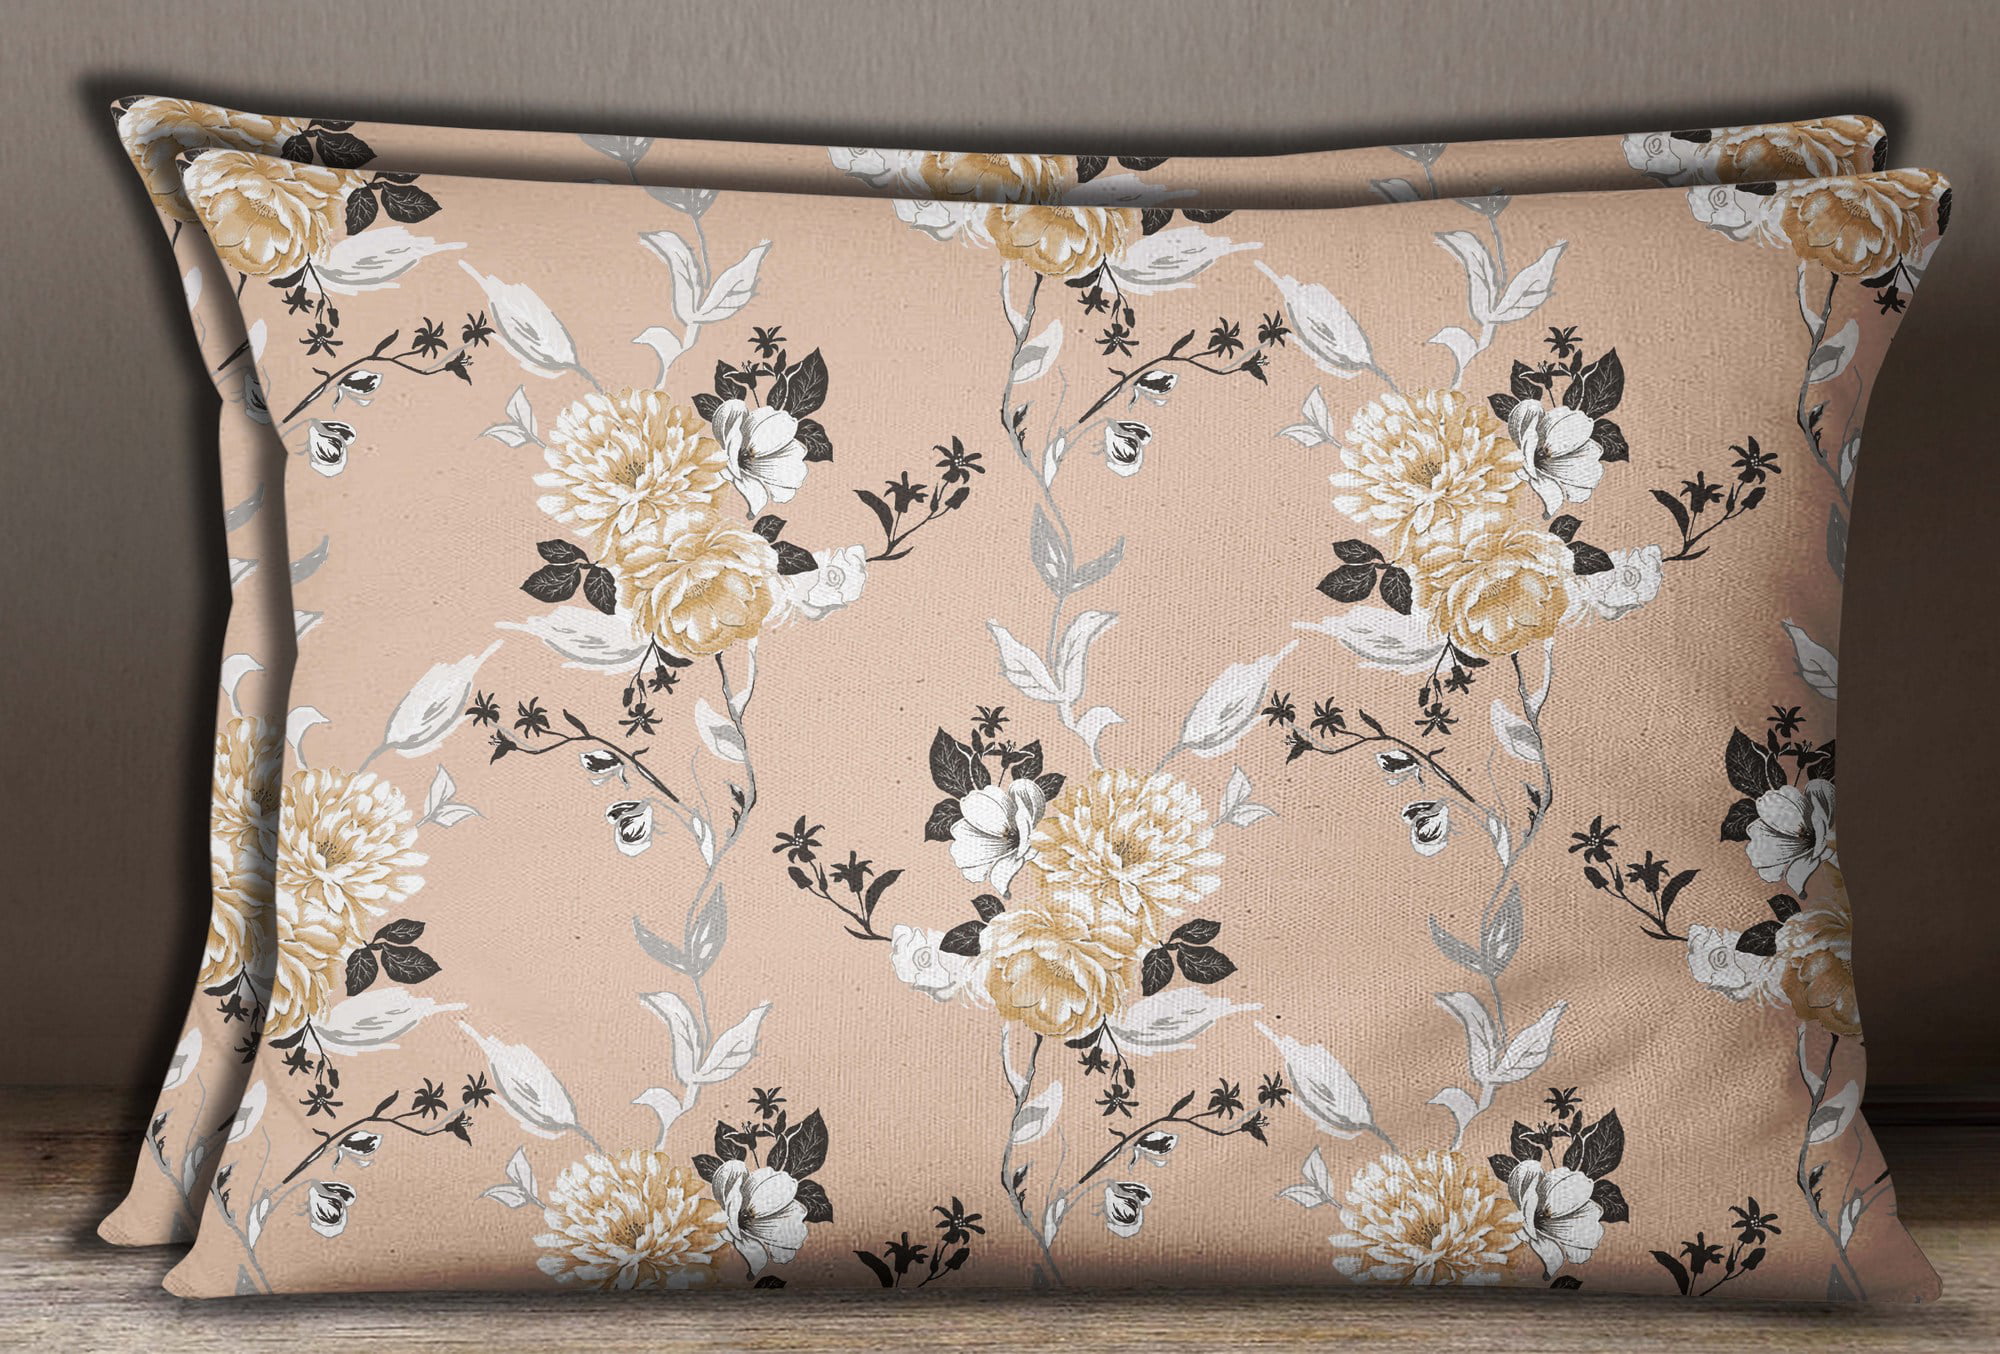 Details about   S4Sassy Floral Print Cotton Poplin 2 Pcs Peach Rectangle Pillow Sham 